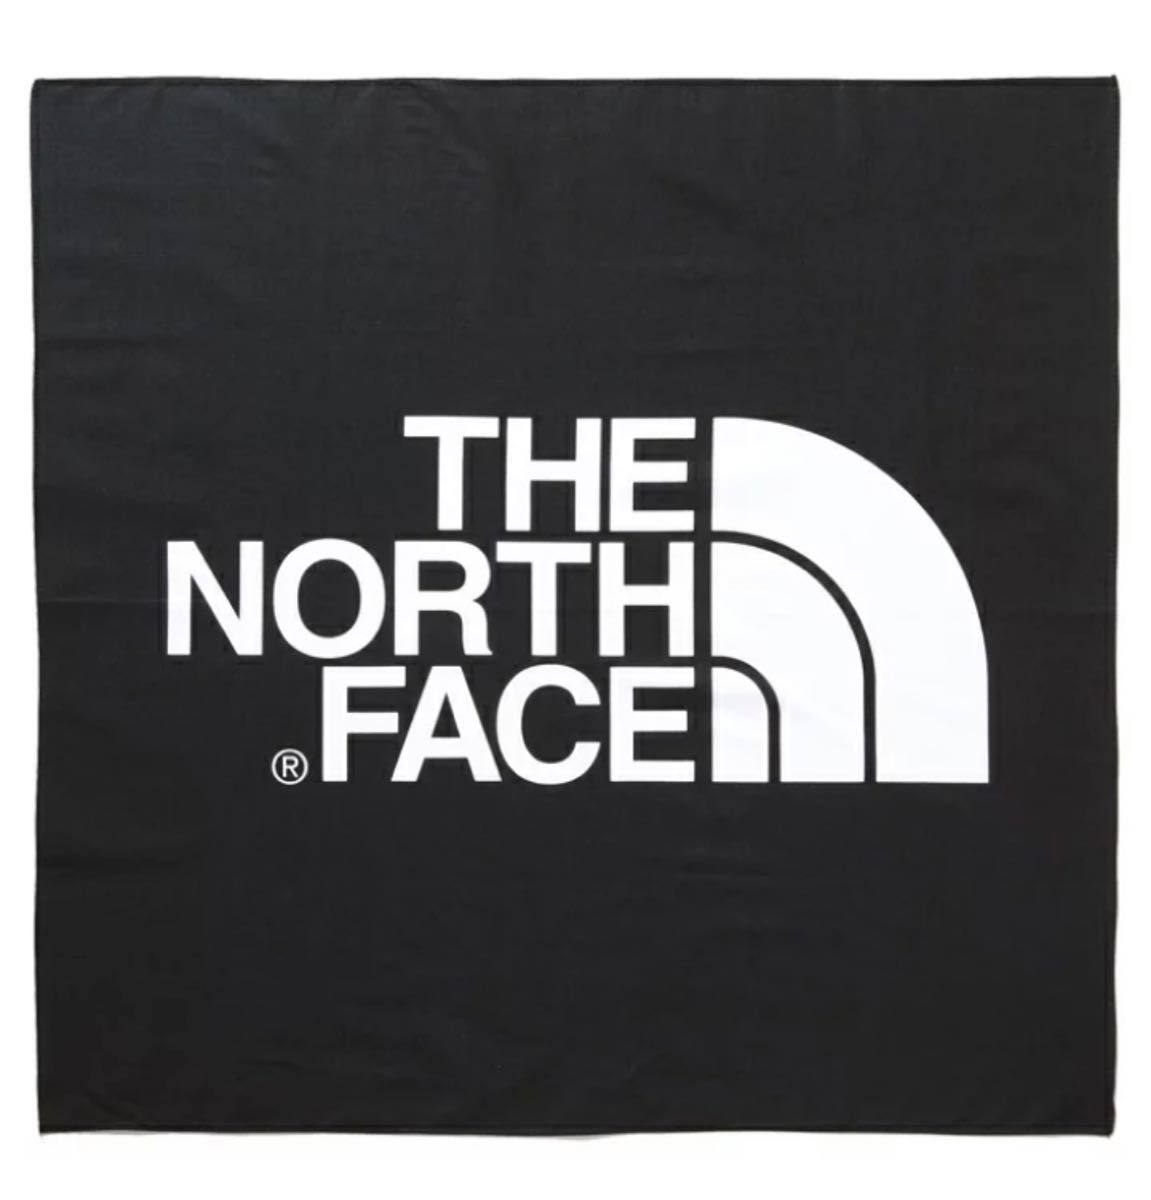 【新品未使用】THE NORTH FACE ザノースフェイス TNF ロゴバンダナ キャンプ スポーツ ユニセックス ブラック 黒